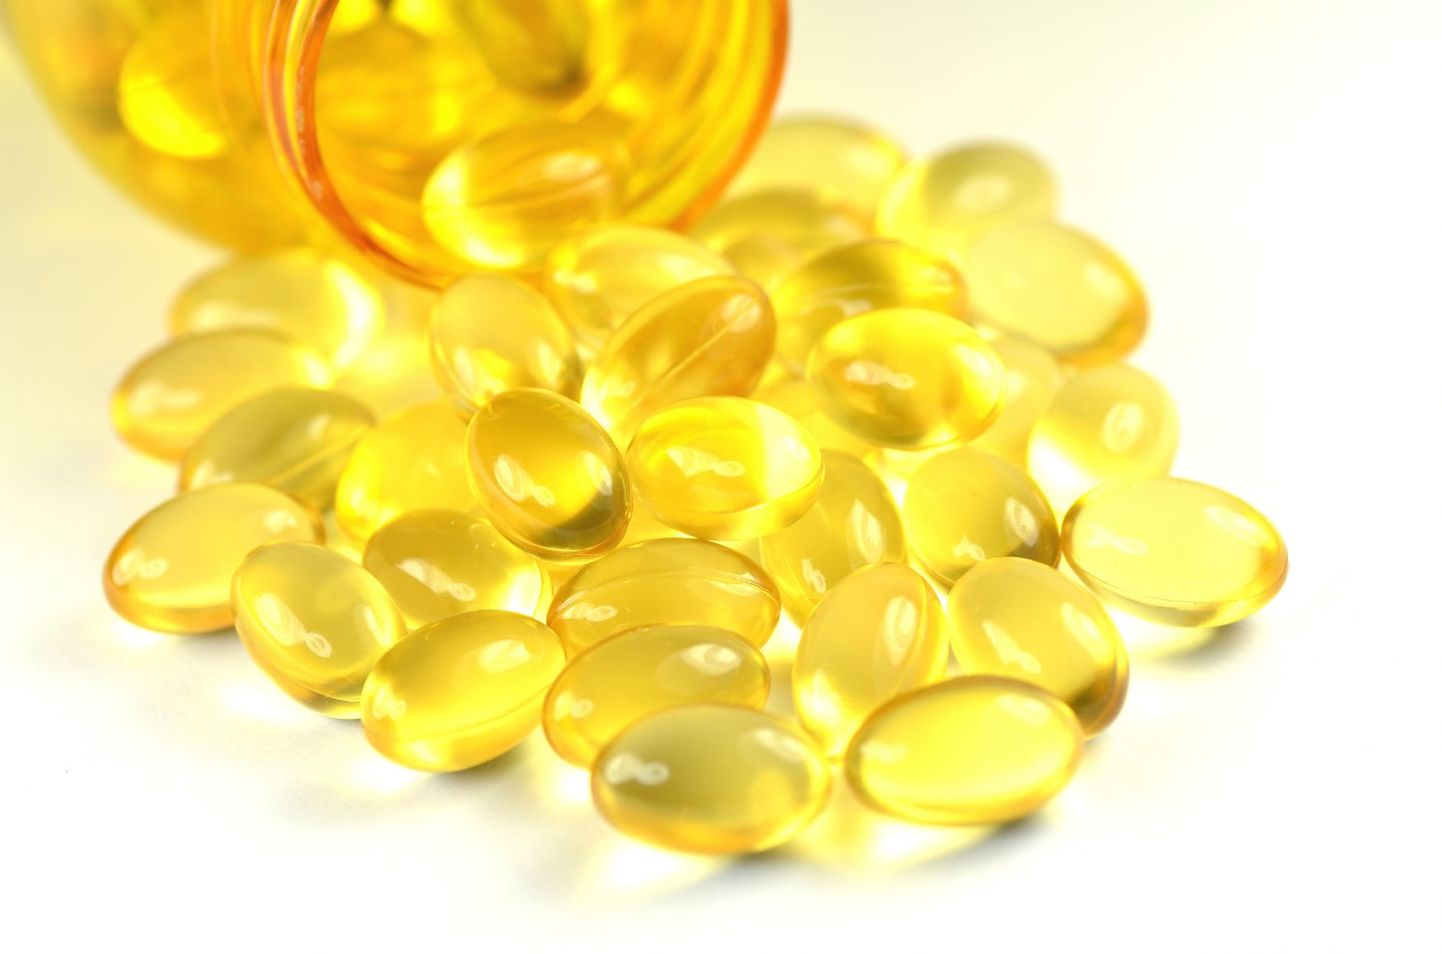 D-vitamiini müüakse nii tilkade kui ka tablettidena.